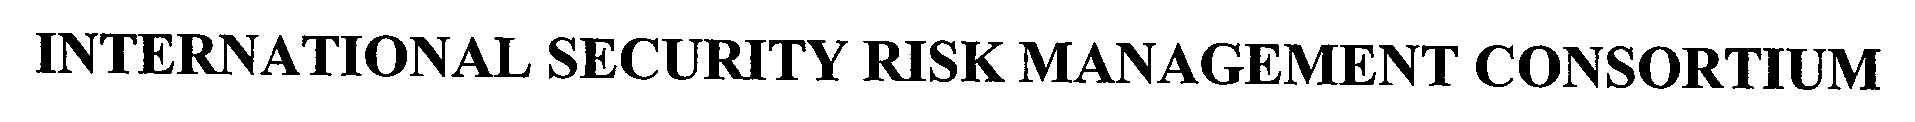  INTERNATIONAL SECURITY RISK MANAGEMENT CONSORTIUM